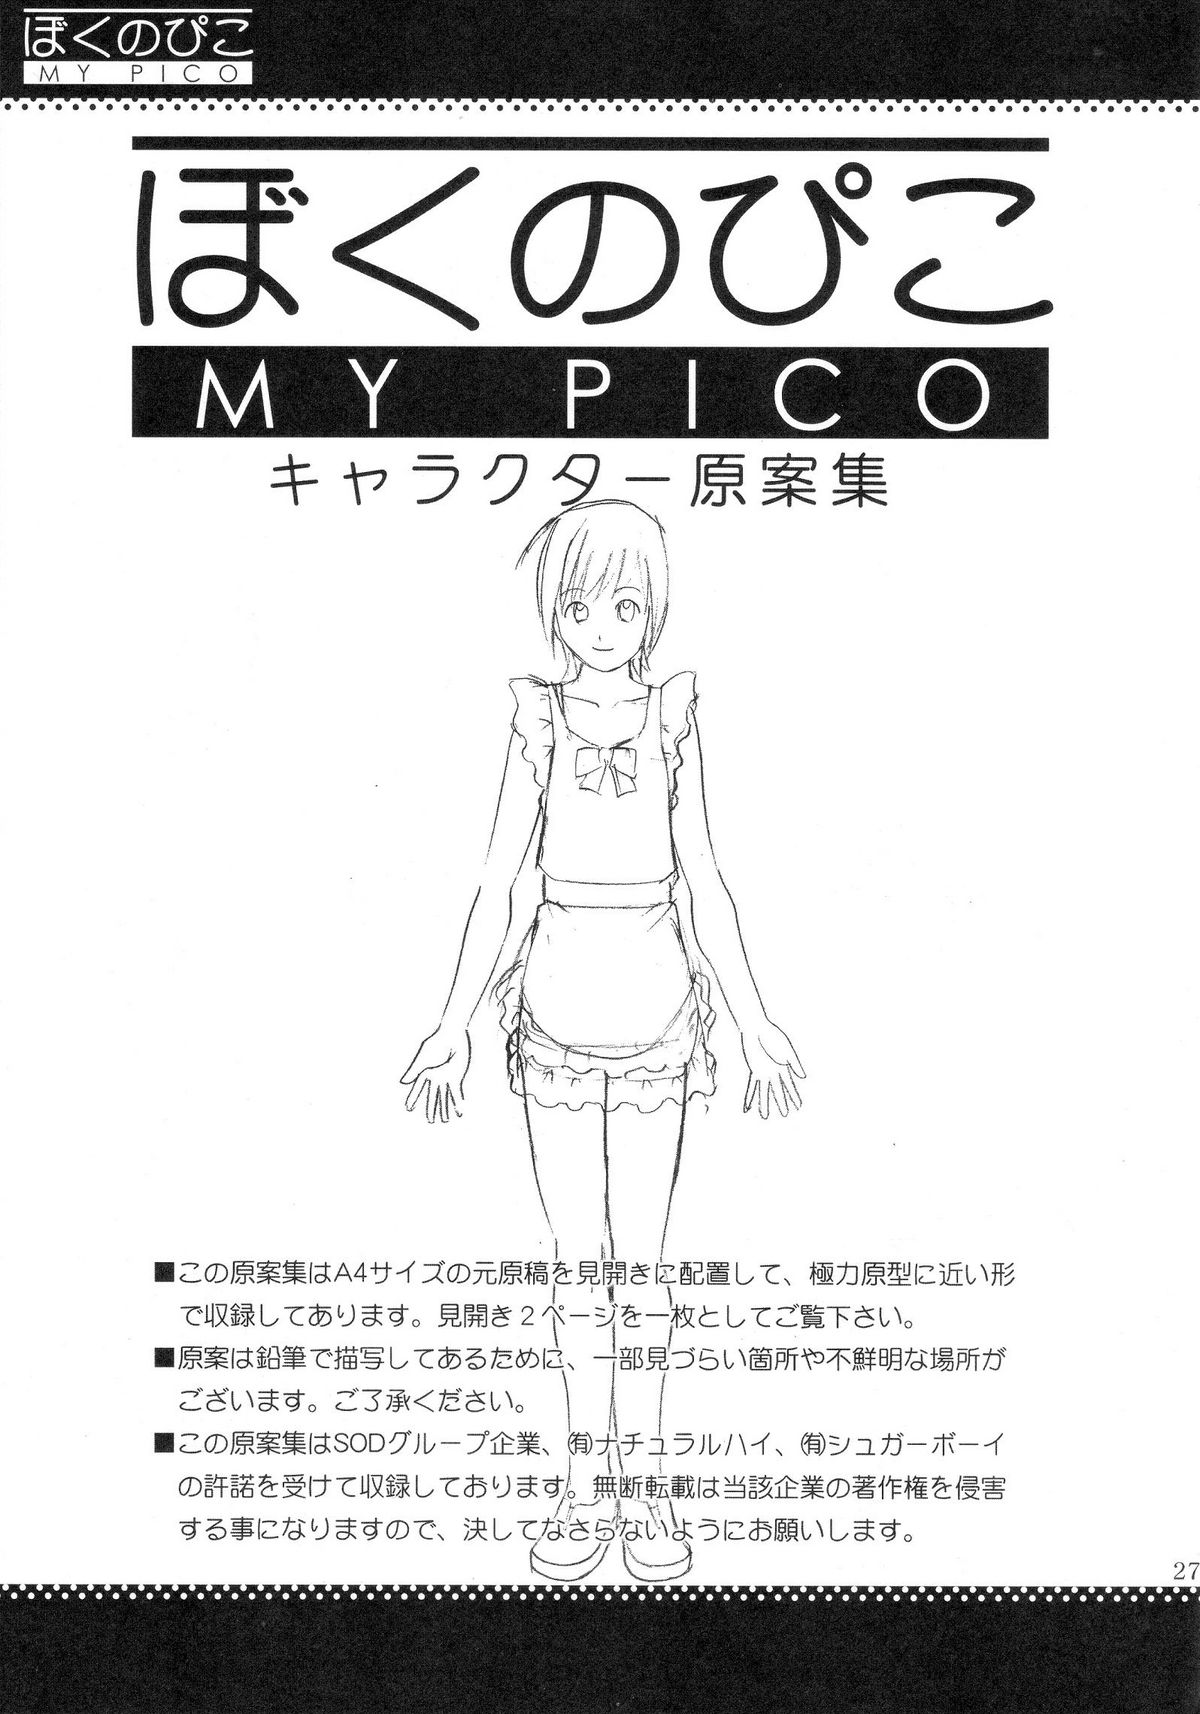 (COMIC1) [Saigado] Boku no Pico Comic + Koushiki Character Genanshuu (Boku no Pico) page 25 full